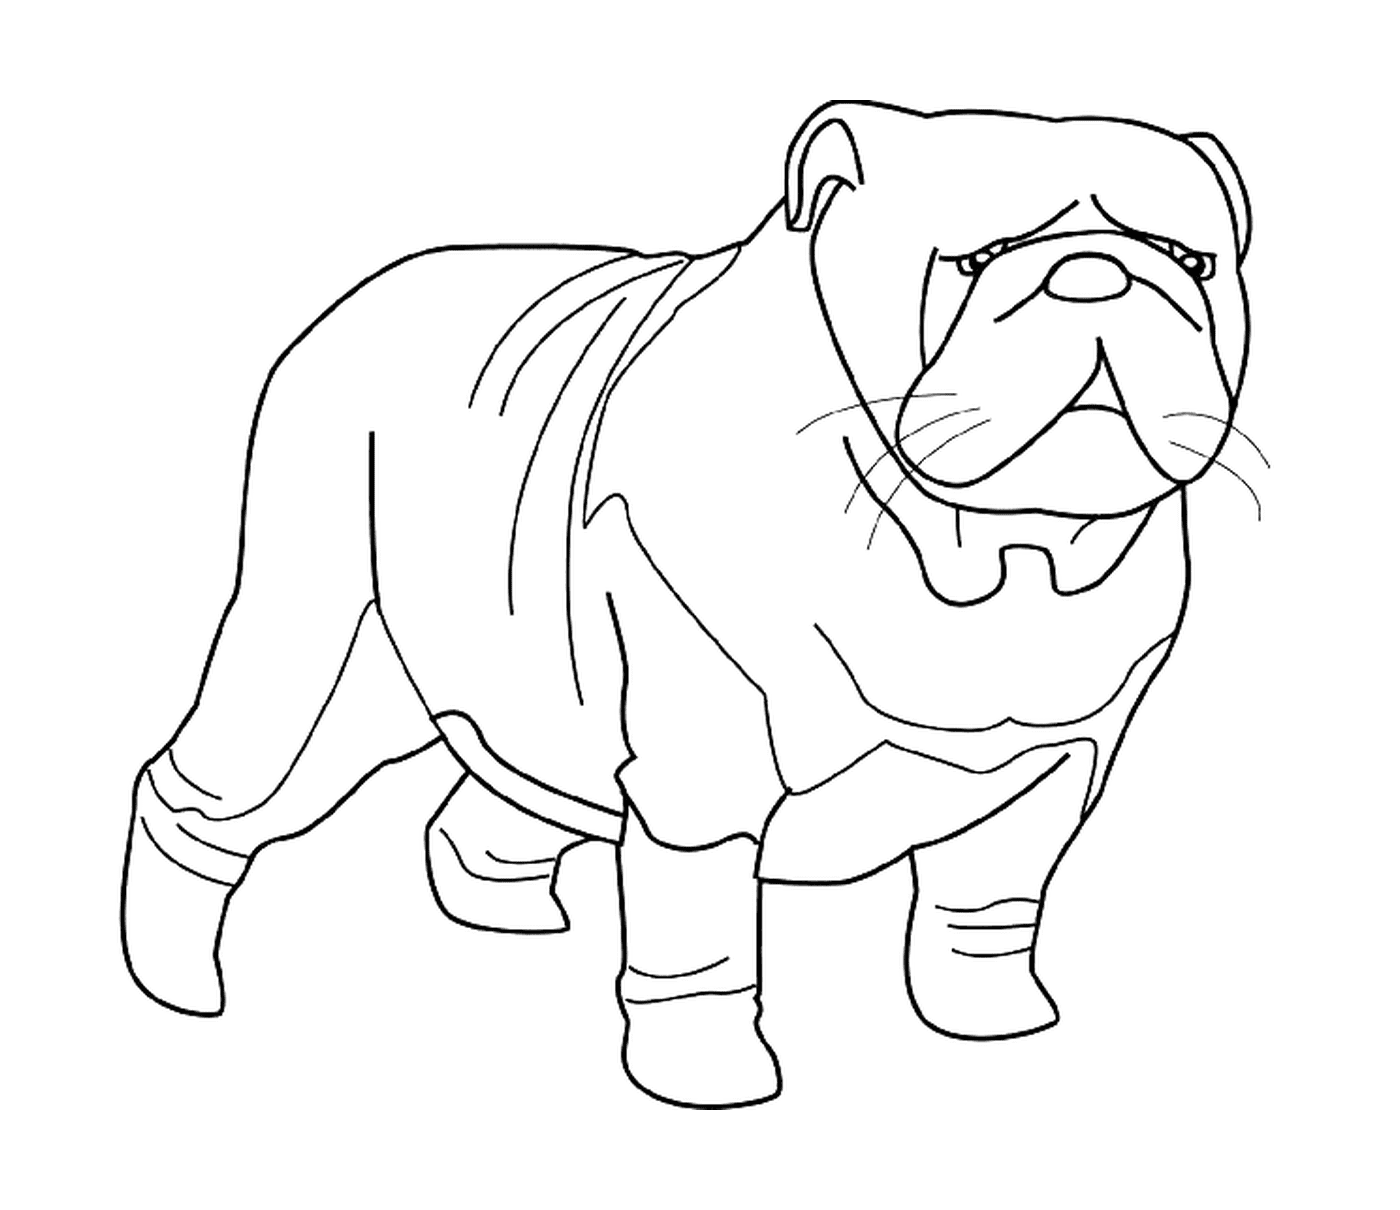  A bulldog wearing a sweater 